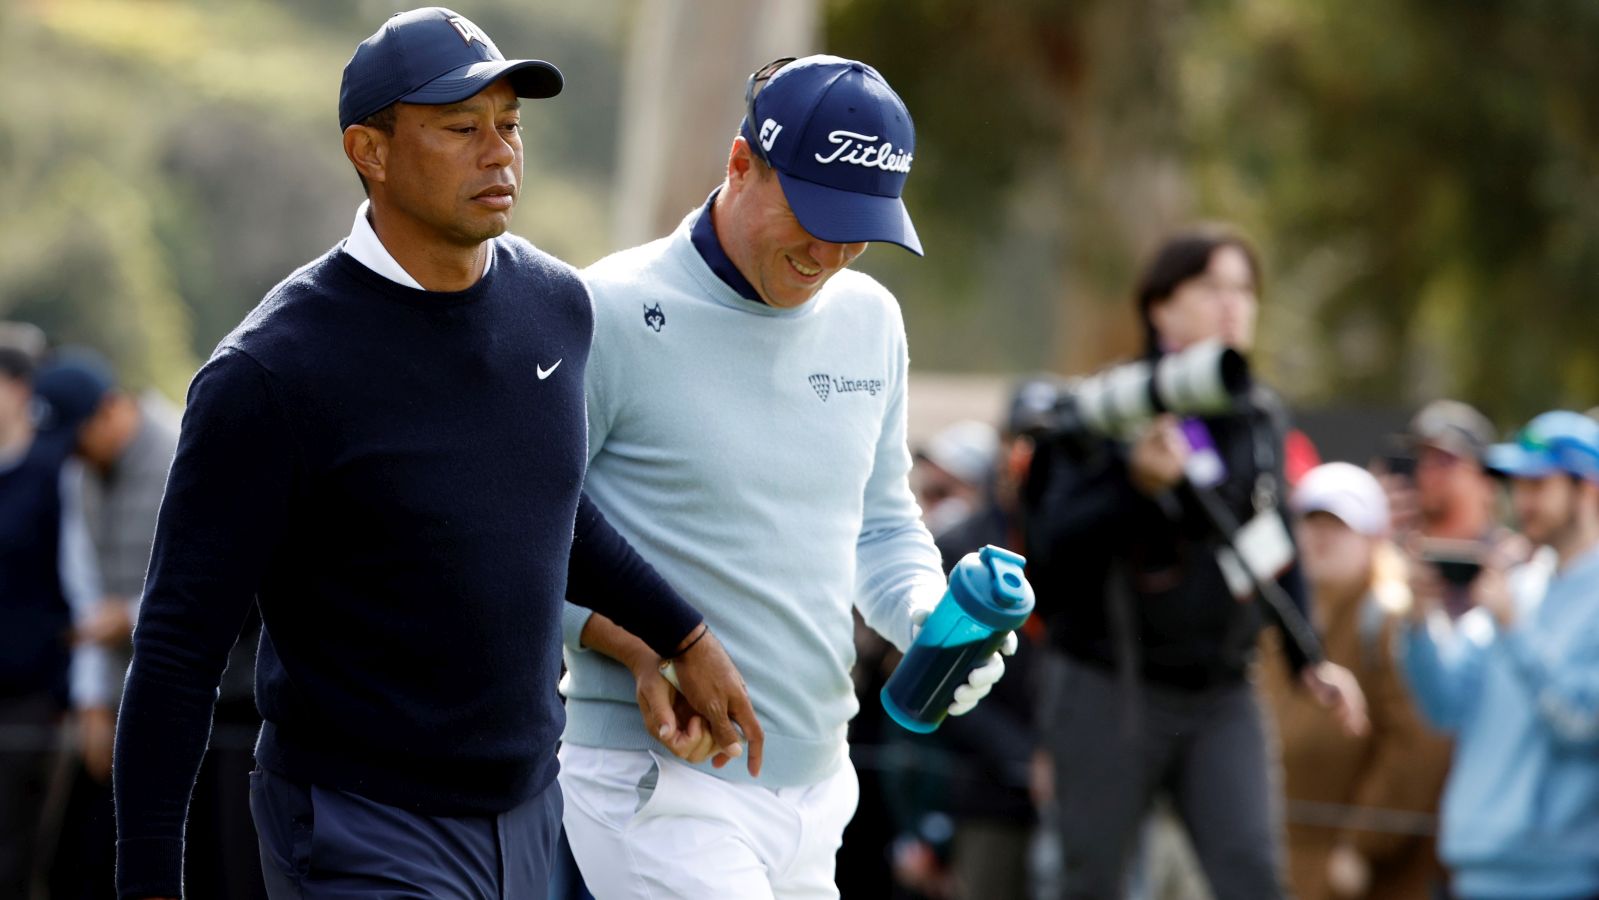 Der Moment der Tampon-Übergabe: Tiger Woods und Justin Thomas sind beim Genesis Invitational in Kalifornien gemeinsam unterwegs.